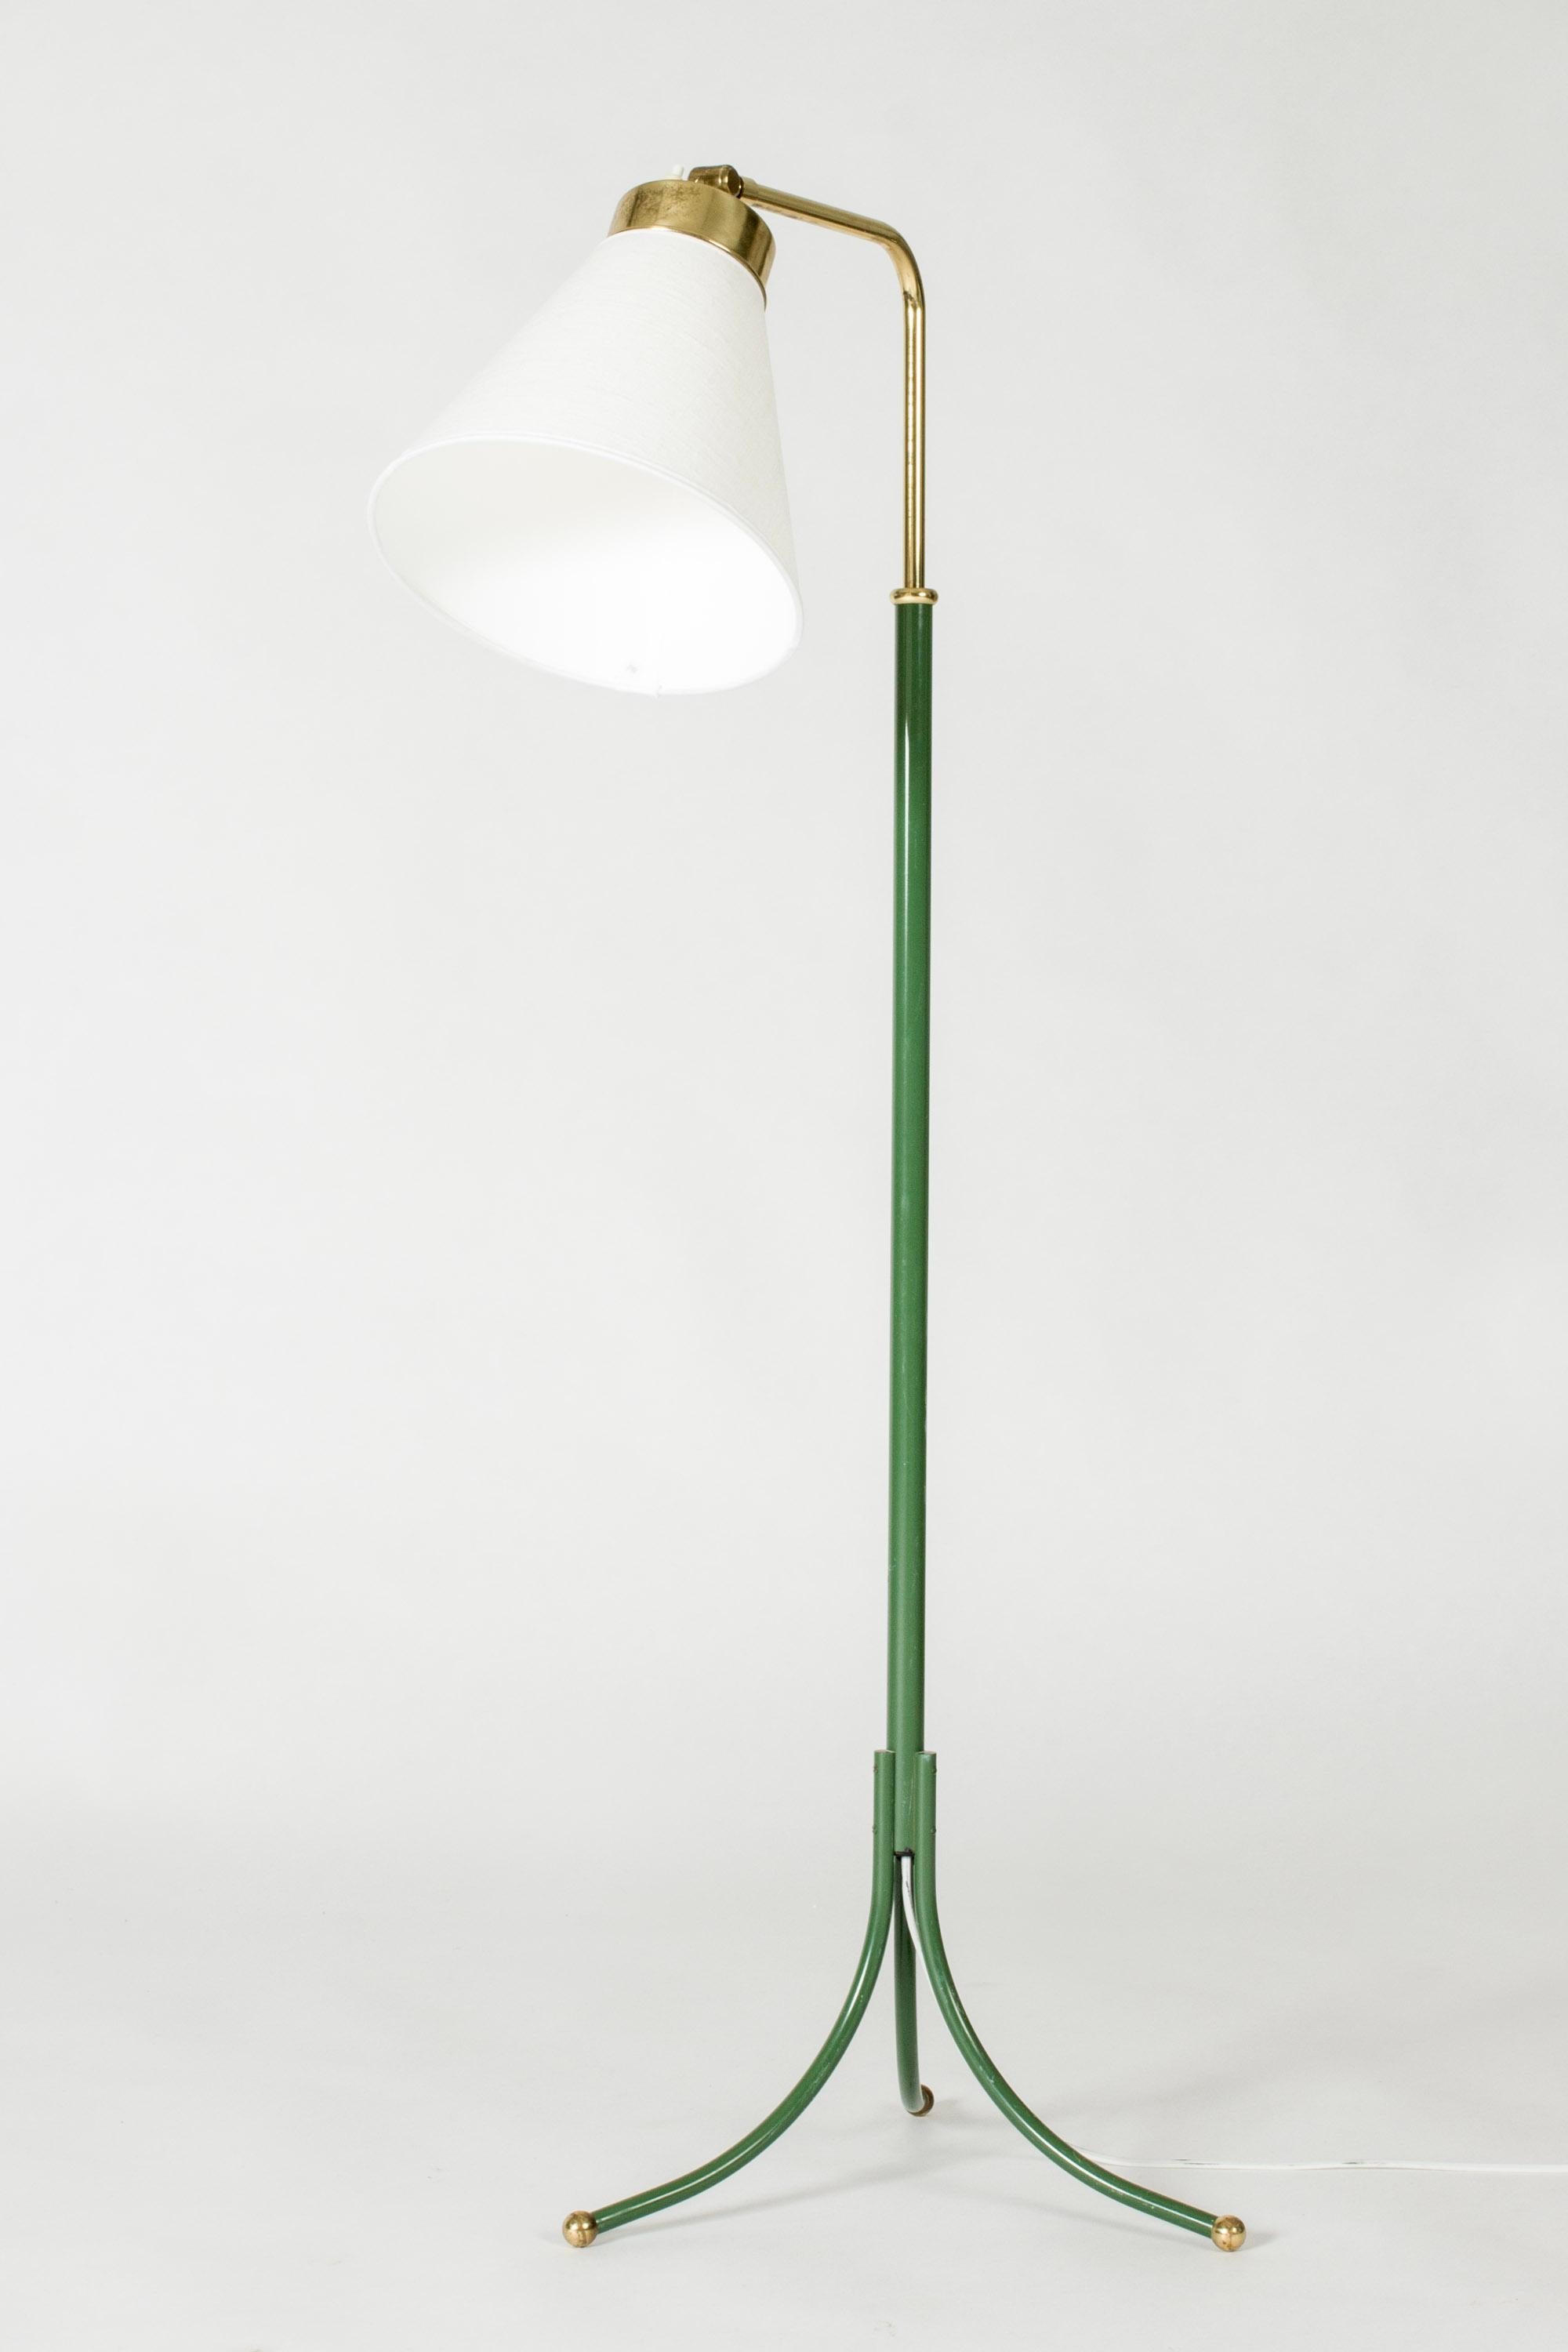 Swedish Brass Floor Lamp model #1842 by Josef Frank for Svenskt Tenn, Sweden, 1950s